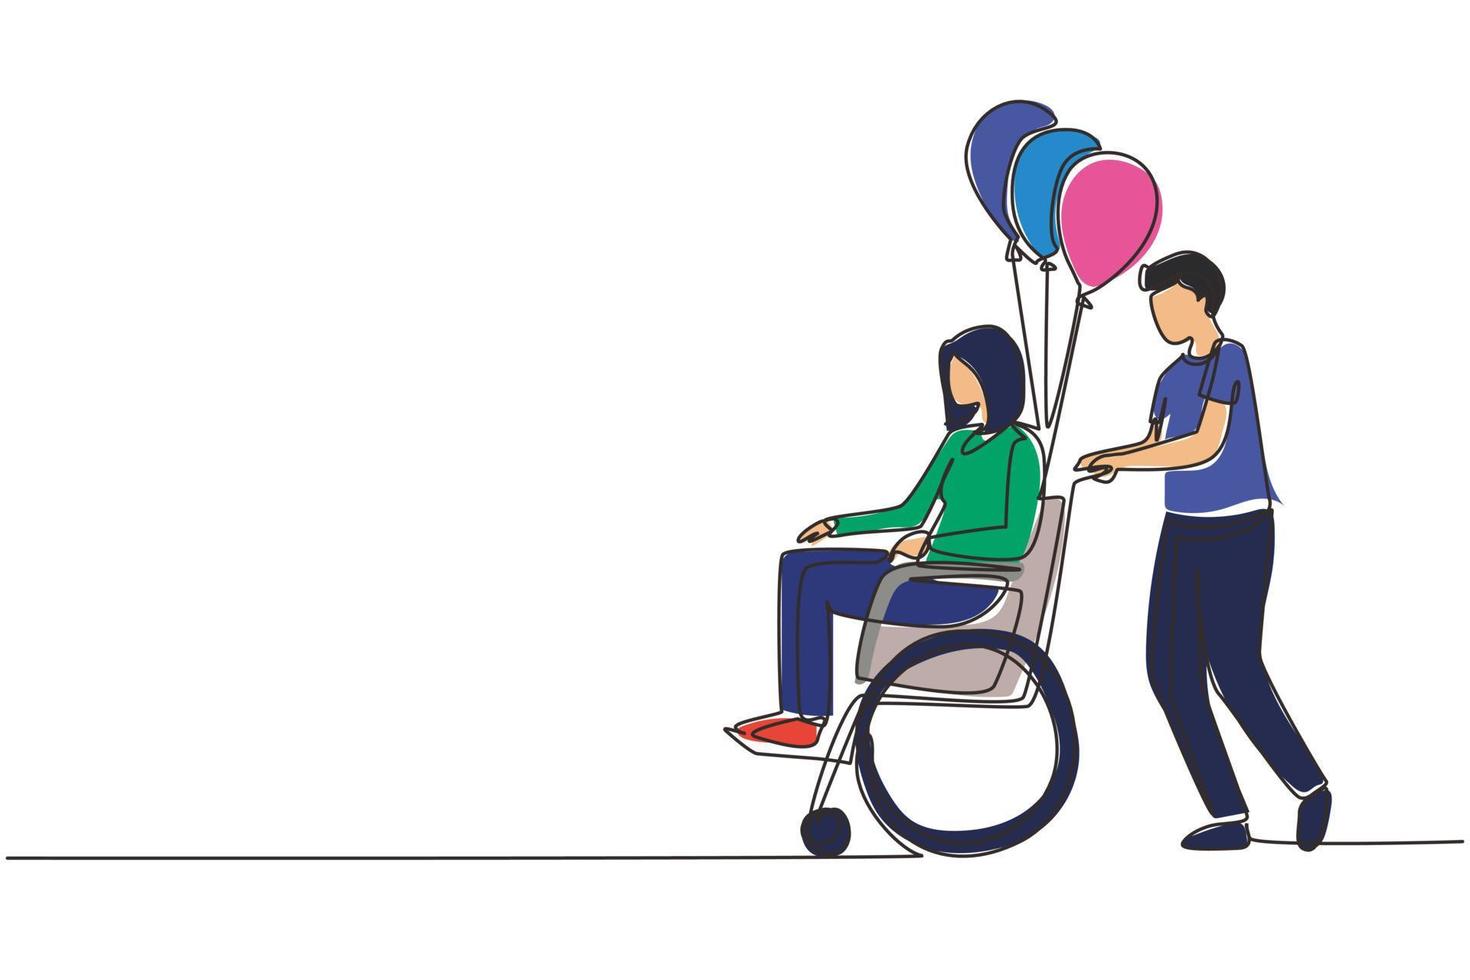 einzelne strichzeichnung behinderung menschen szene konzept. Mann trägt behinderte Frau im Rollstuhl. barrierefreiheit, rehabilitierung invalide person, menschen aktivitäten. Designvektor mit durchgehender Linie vektor